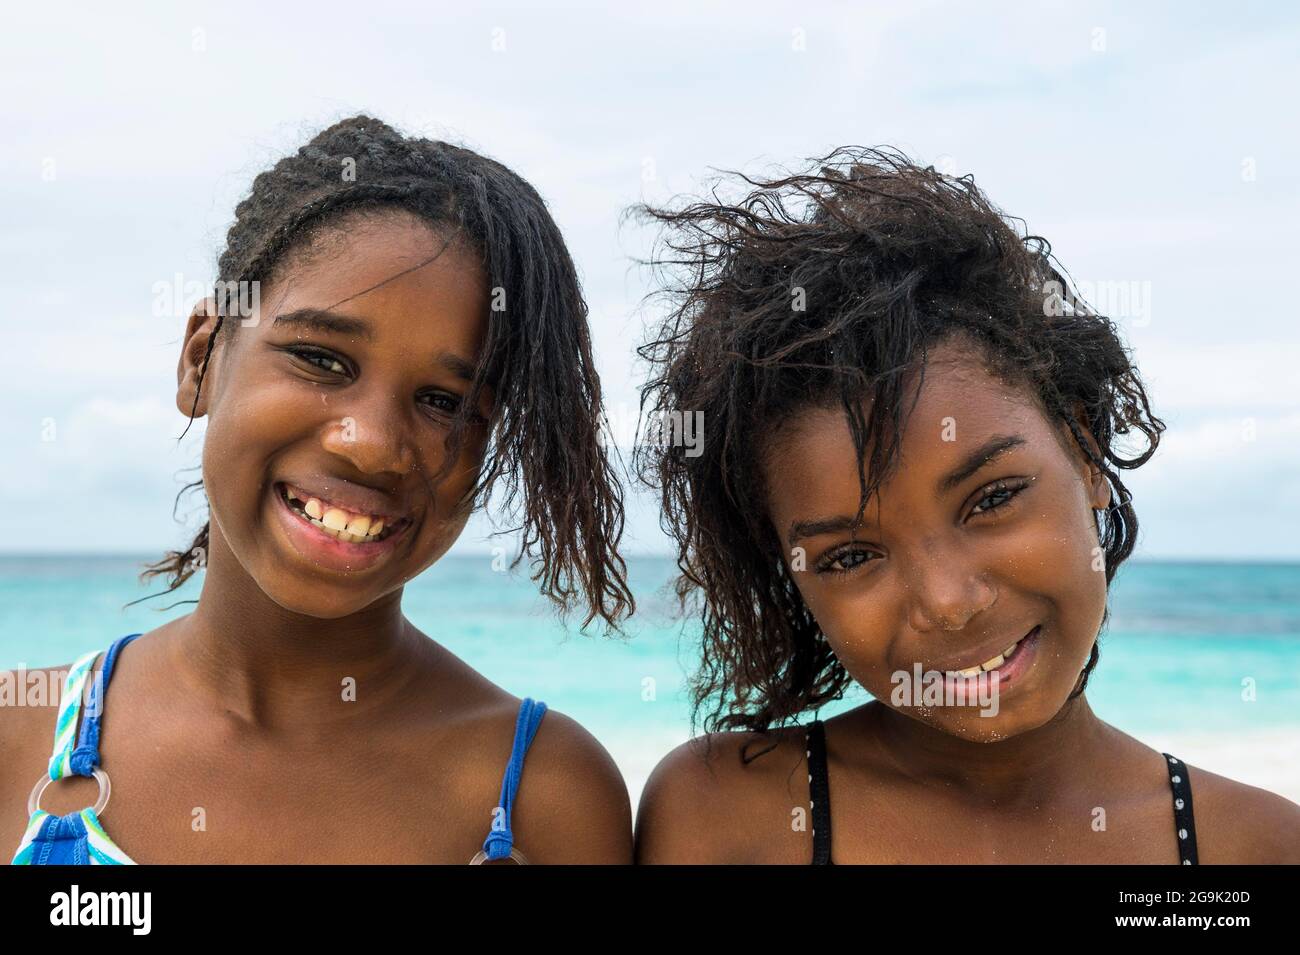 Muchachas locales bastante jóvenes, en la playa del este de la bahía de Shoal de la clase mundial, Anguila, Caribe, territorio británico del mar, Reino Unido Foto de stock